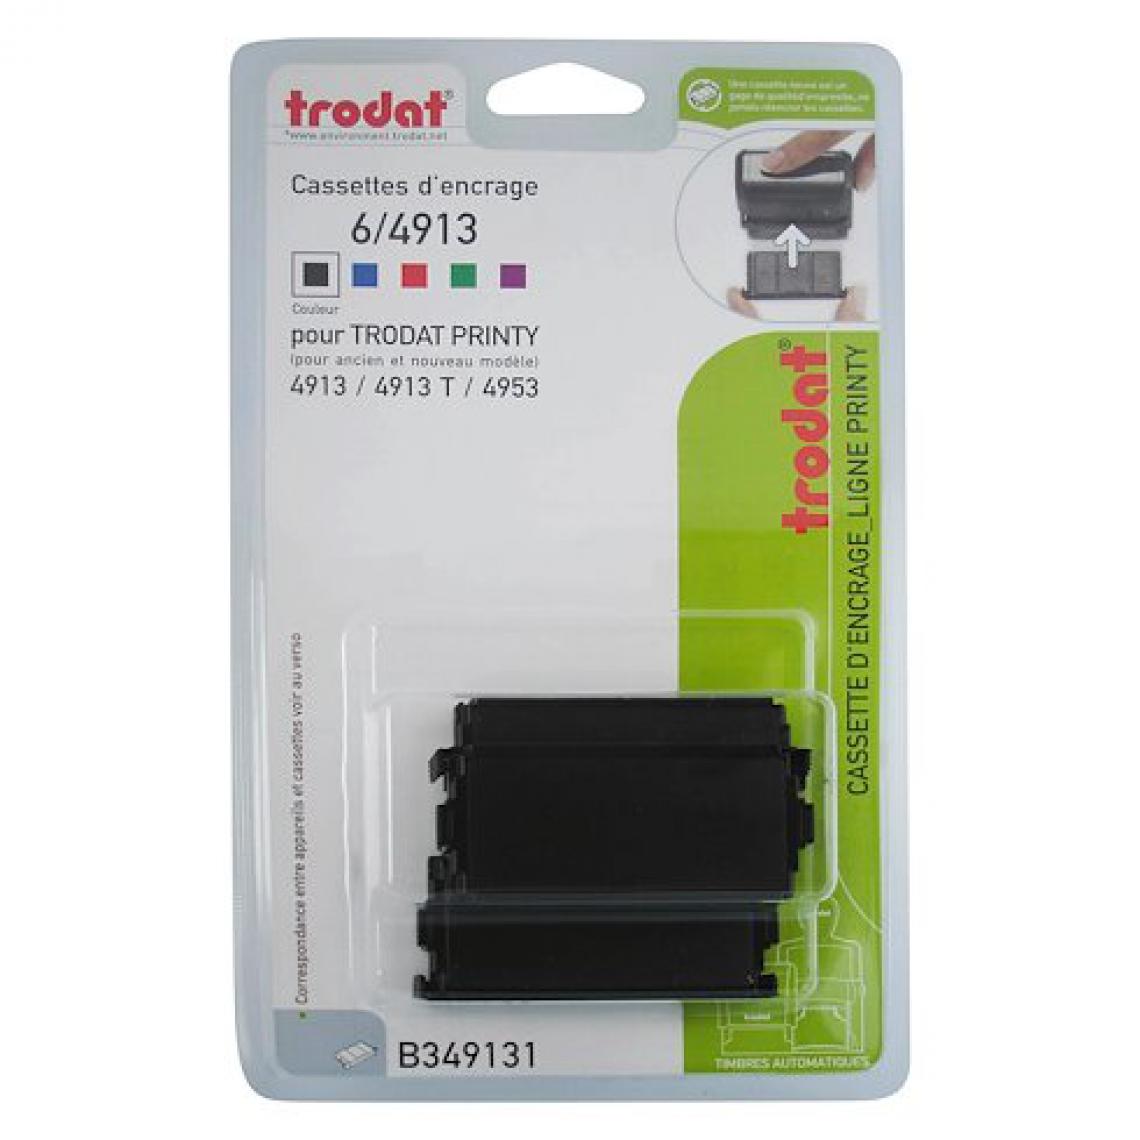 Trodat - Cassette d'encrage Trodat Printy 6/4913 - noire - Lot de 3 - Accessoires Bureau